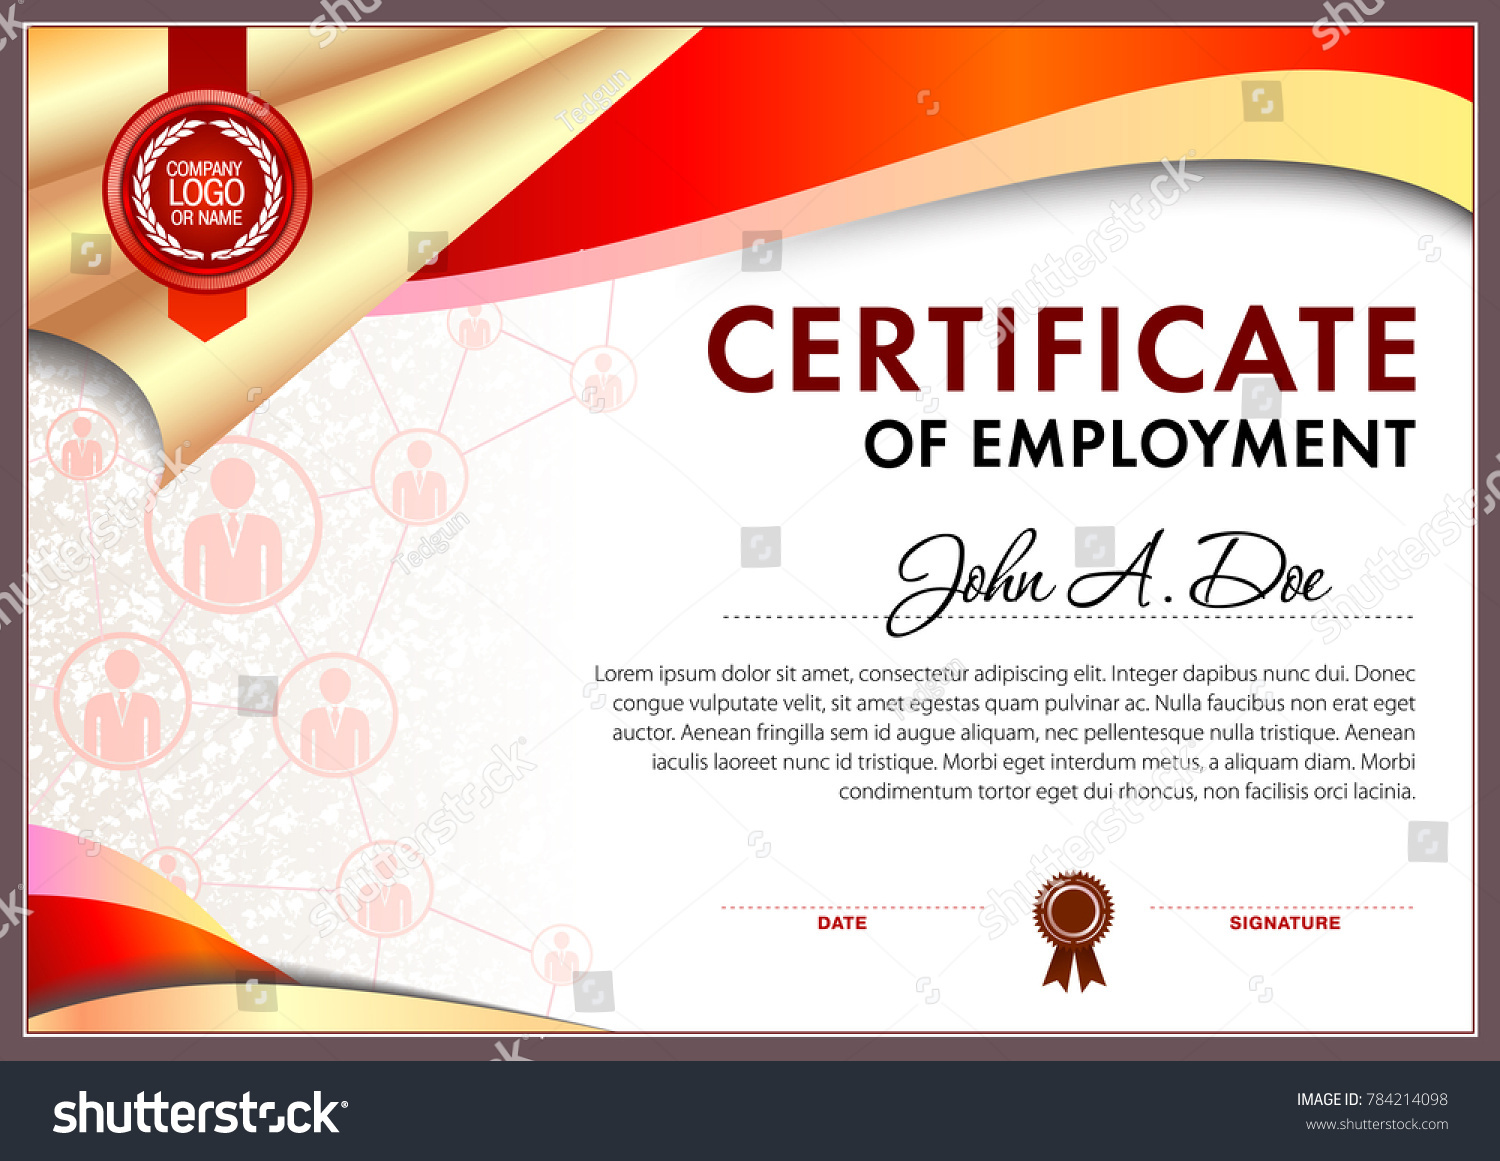 Suchen Sie nach Certificate Employment Blank Template Within Certificate Of Employment Template